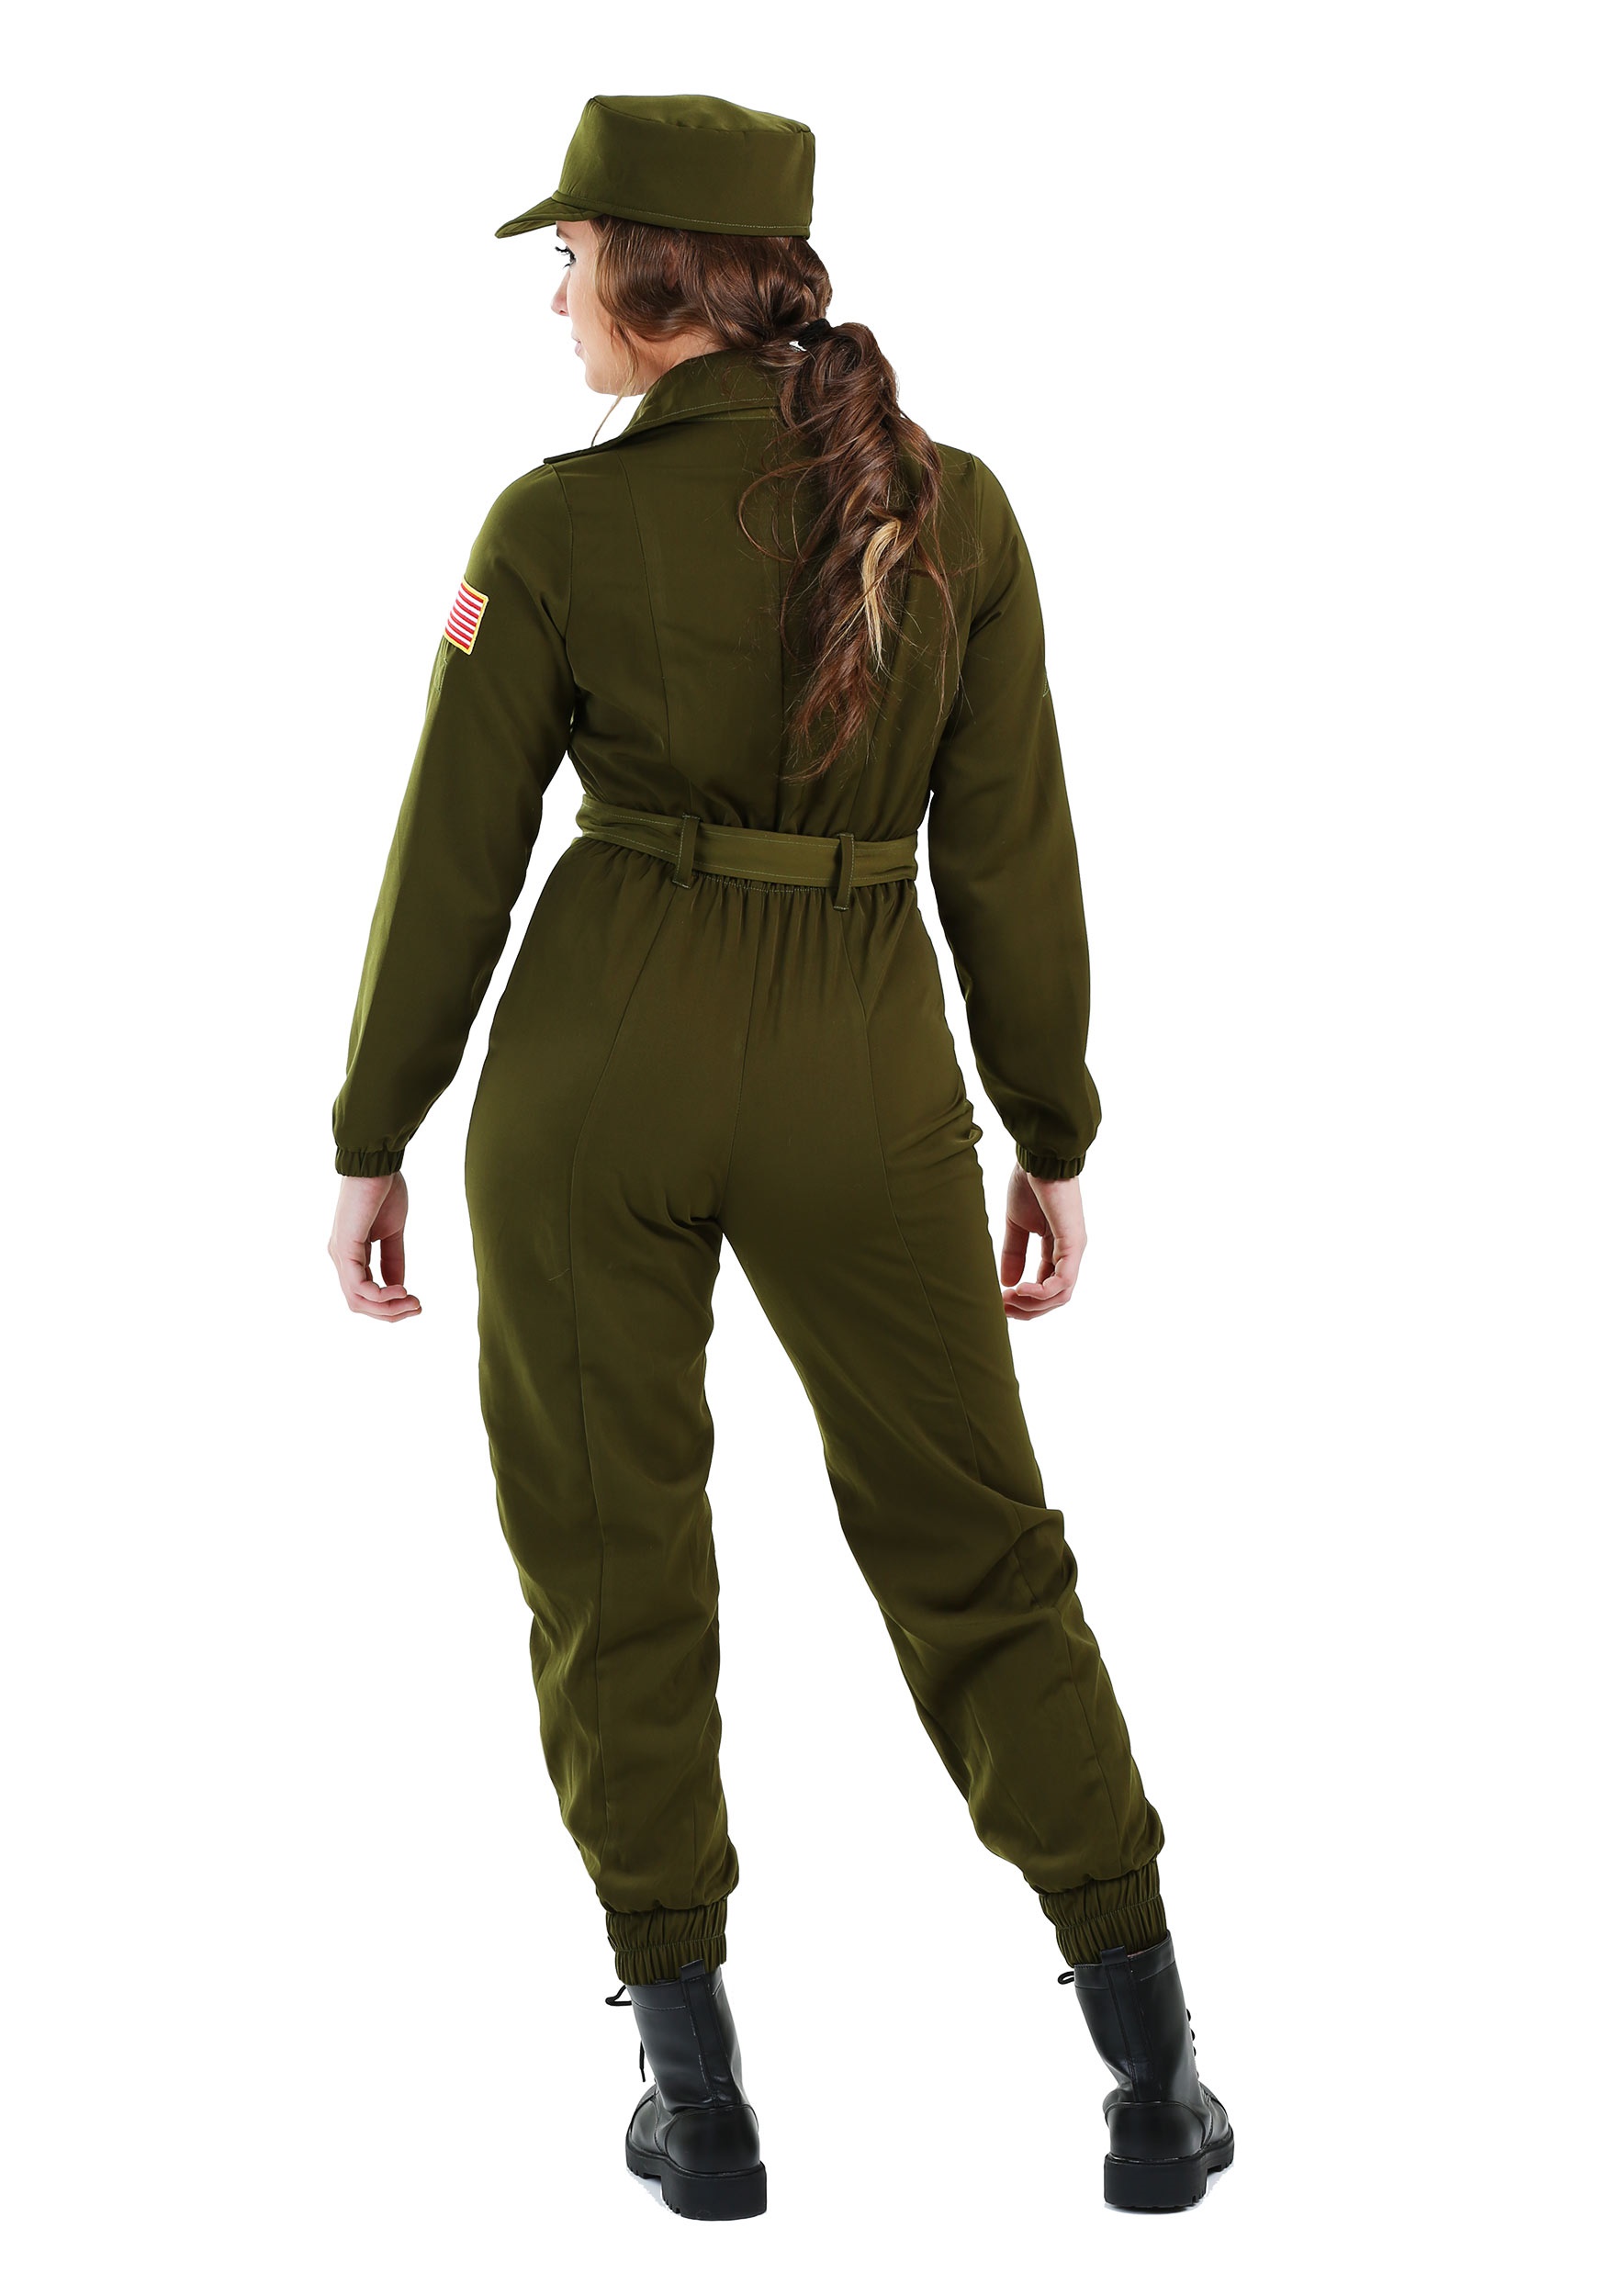 Mens Top Gun Maverick Costume Adult Flight Suit Film Fancy Dress Outfit  Large XL | eBay